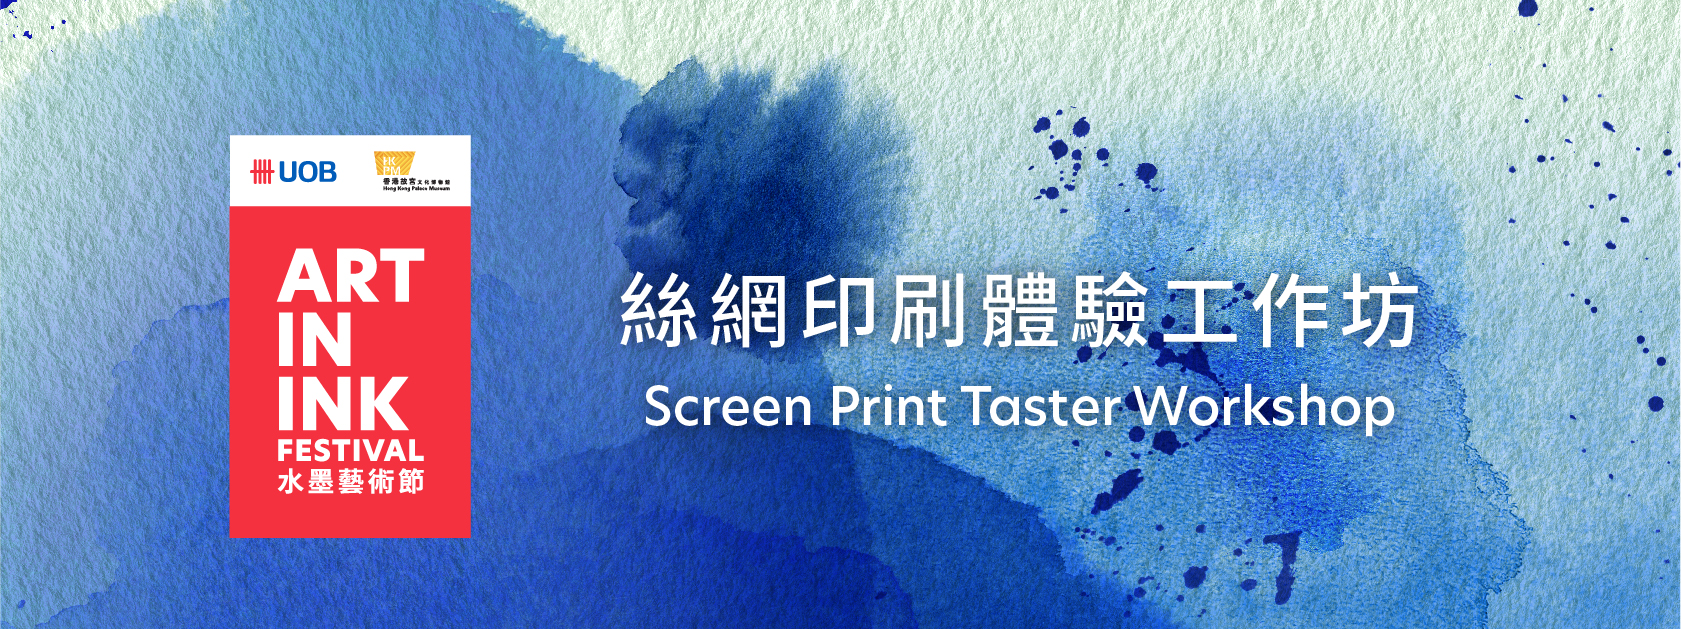 Screen Print Taster Workshop